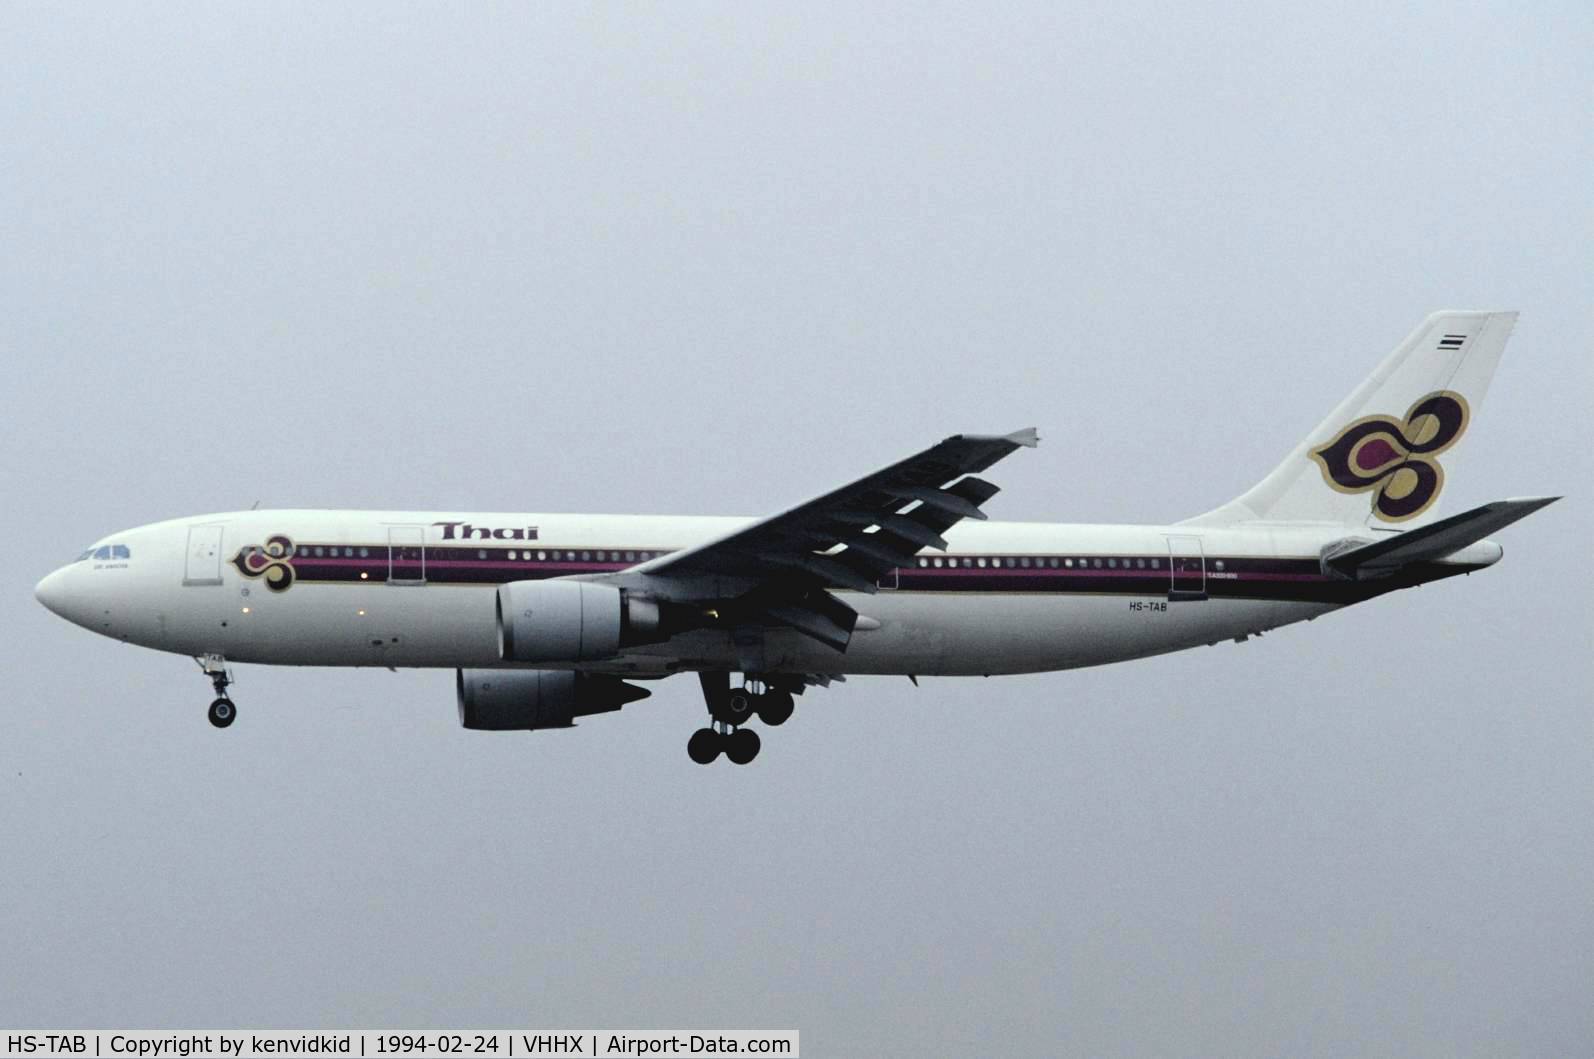 HS-TAB, 1985 Airbus A300B4-601 C/N 371, At Hong Kong Airport (Kai Tak) on a George Pick Aviation Tour.